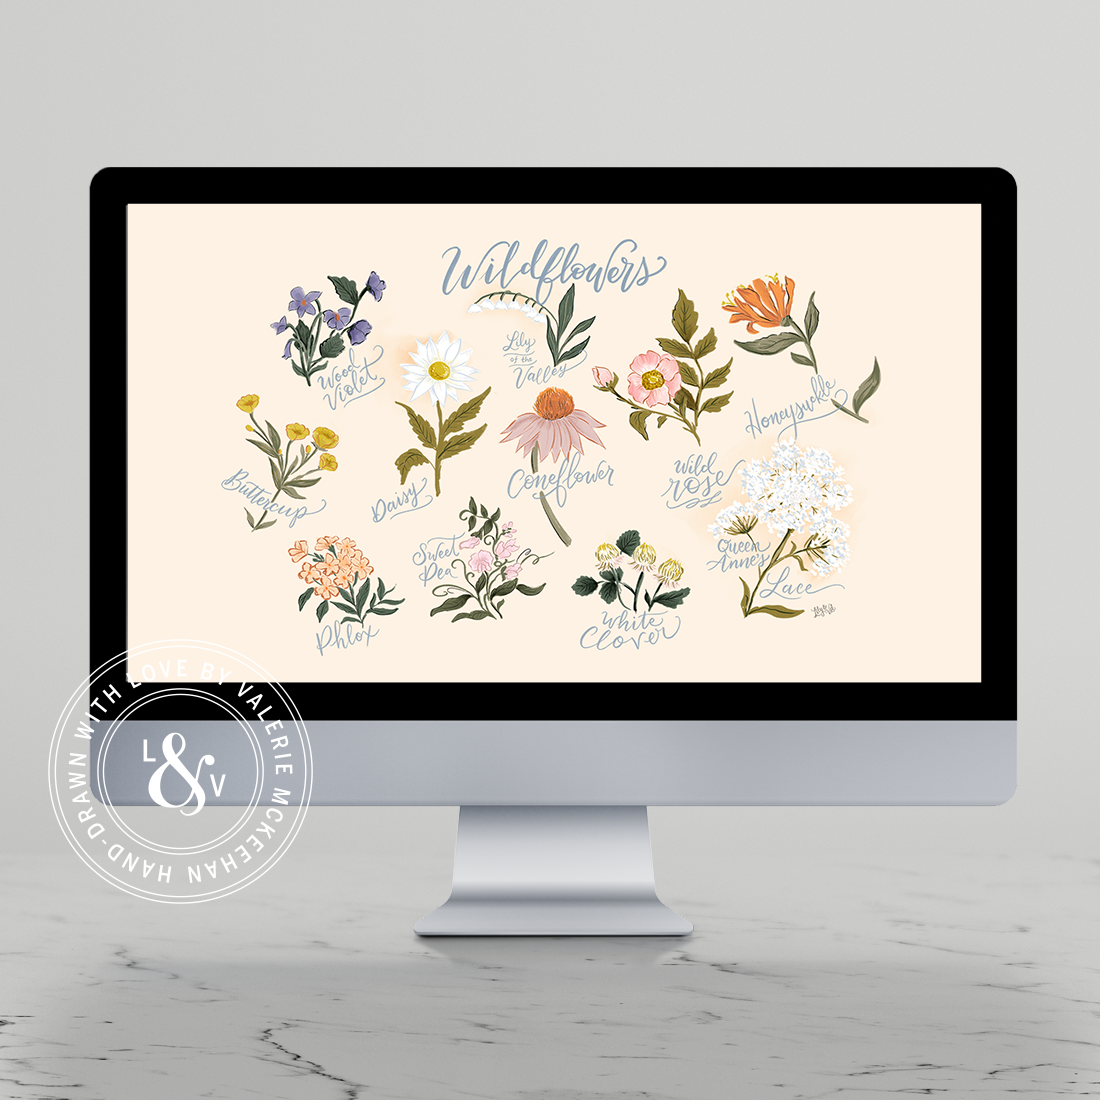 August's "Wildflowers" Desktop Download